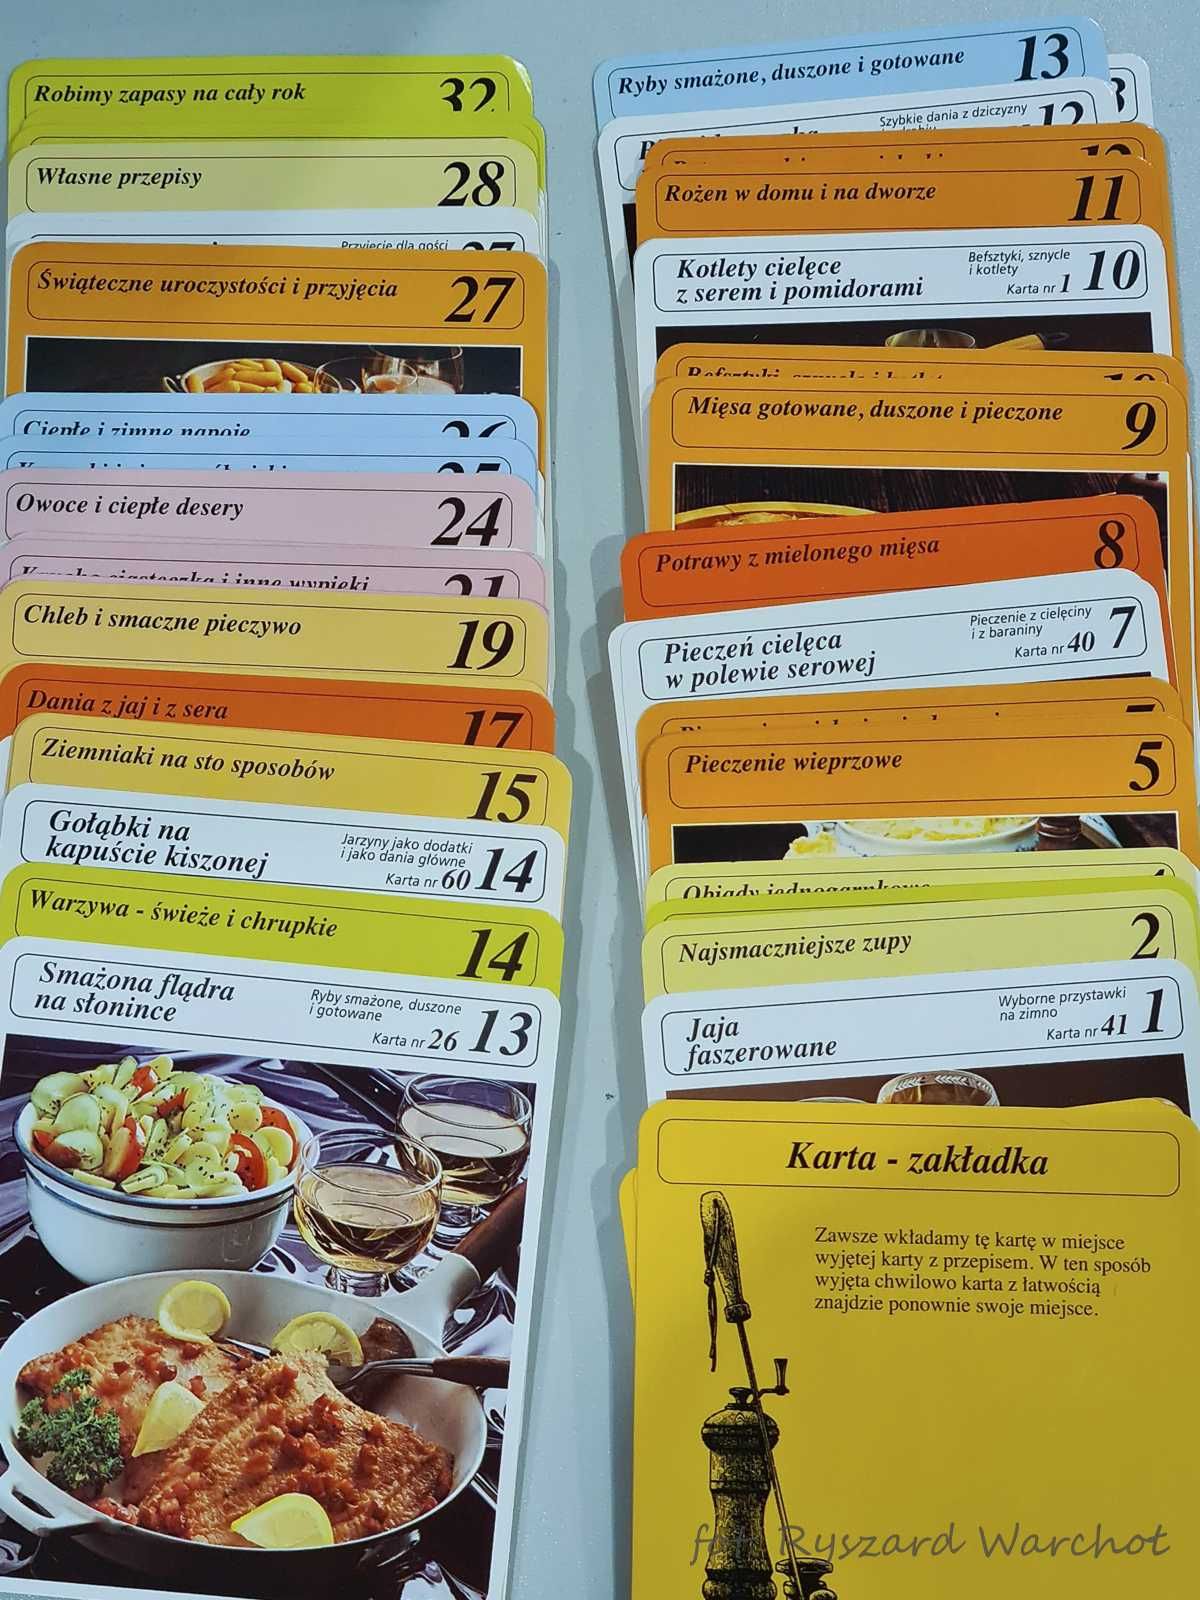 Karteczki z przepisami do każdej kuchni